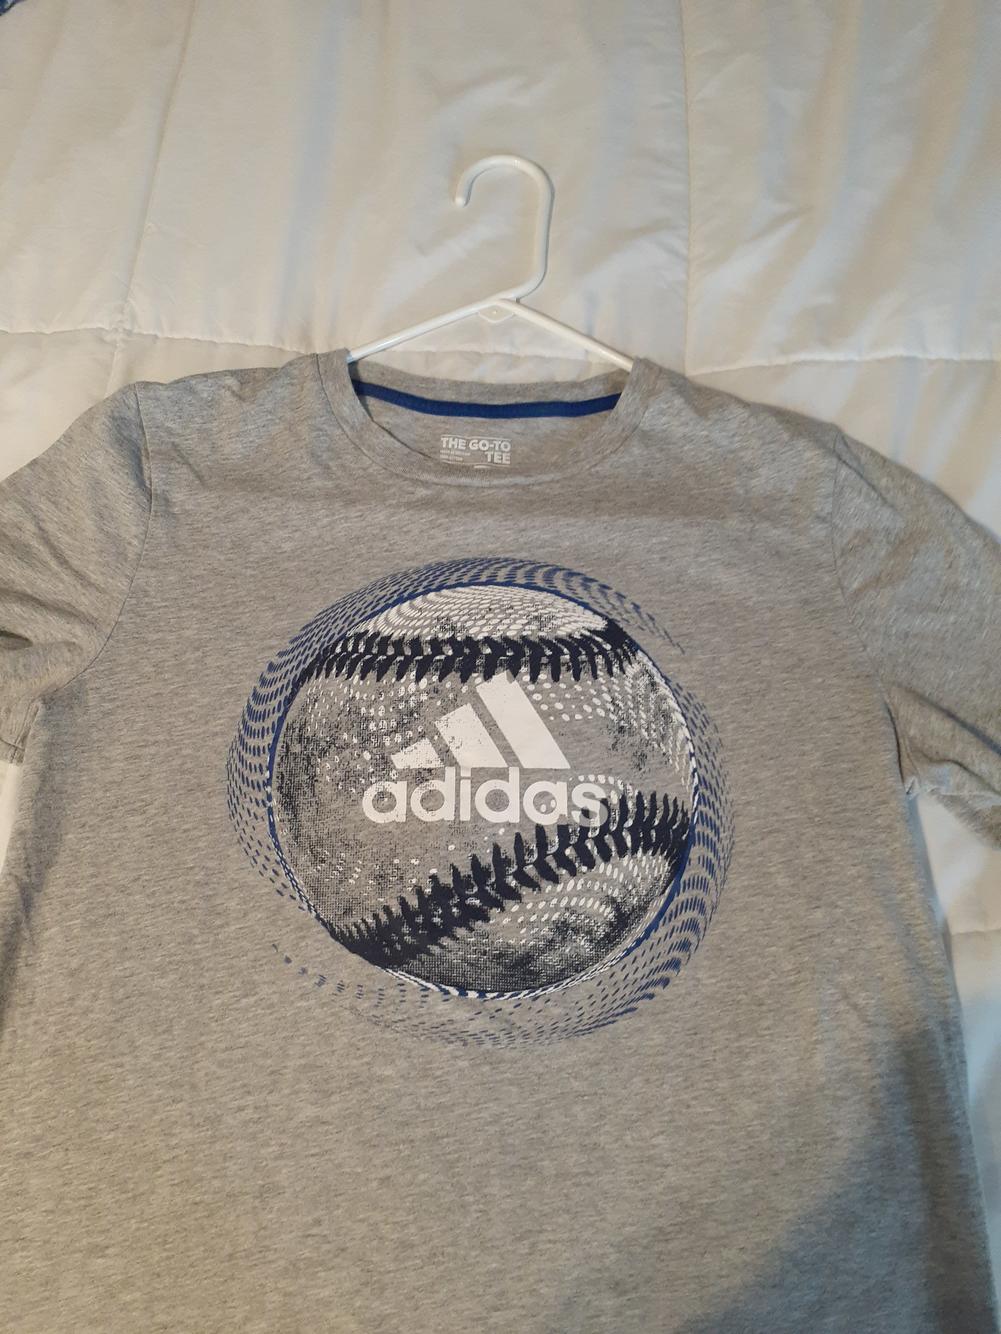 New Youth Large Adidas Baseball Shirt | SidelineSwap